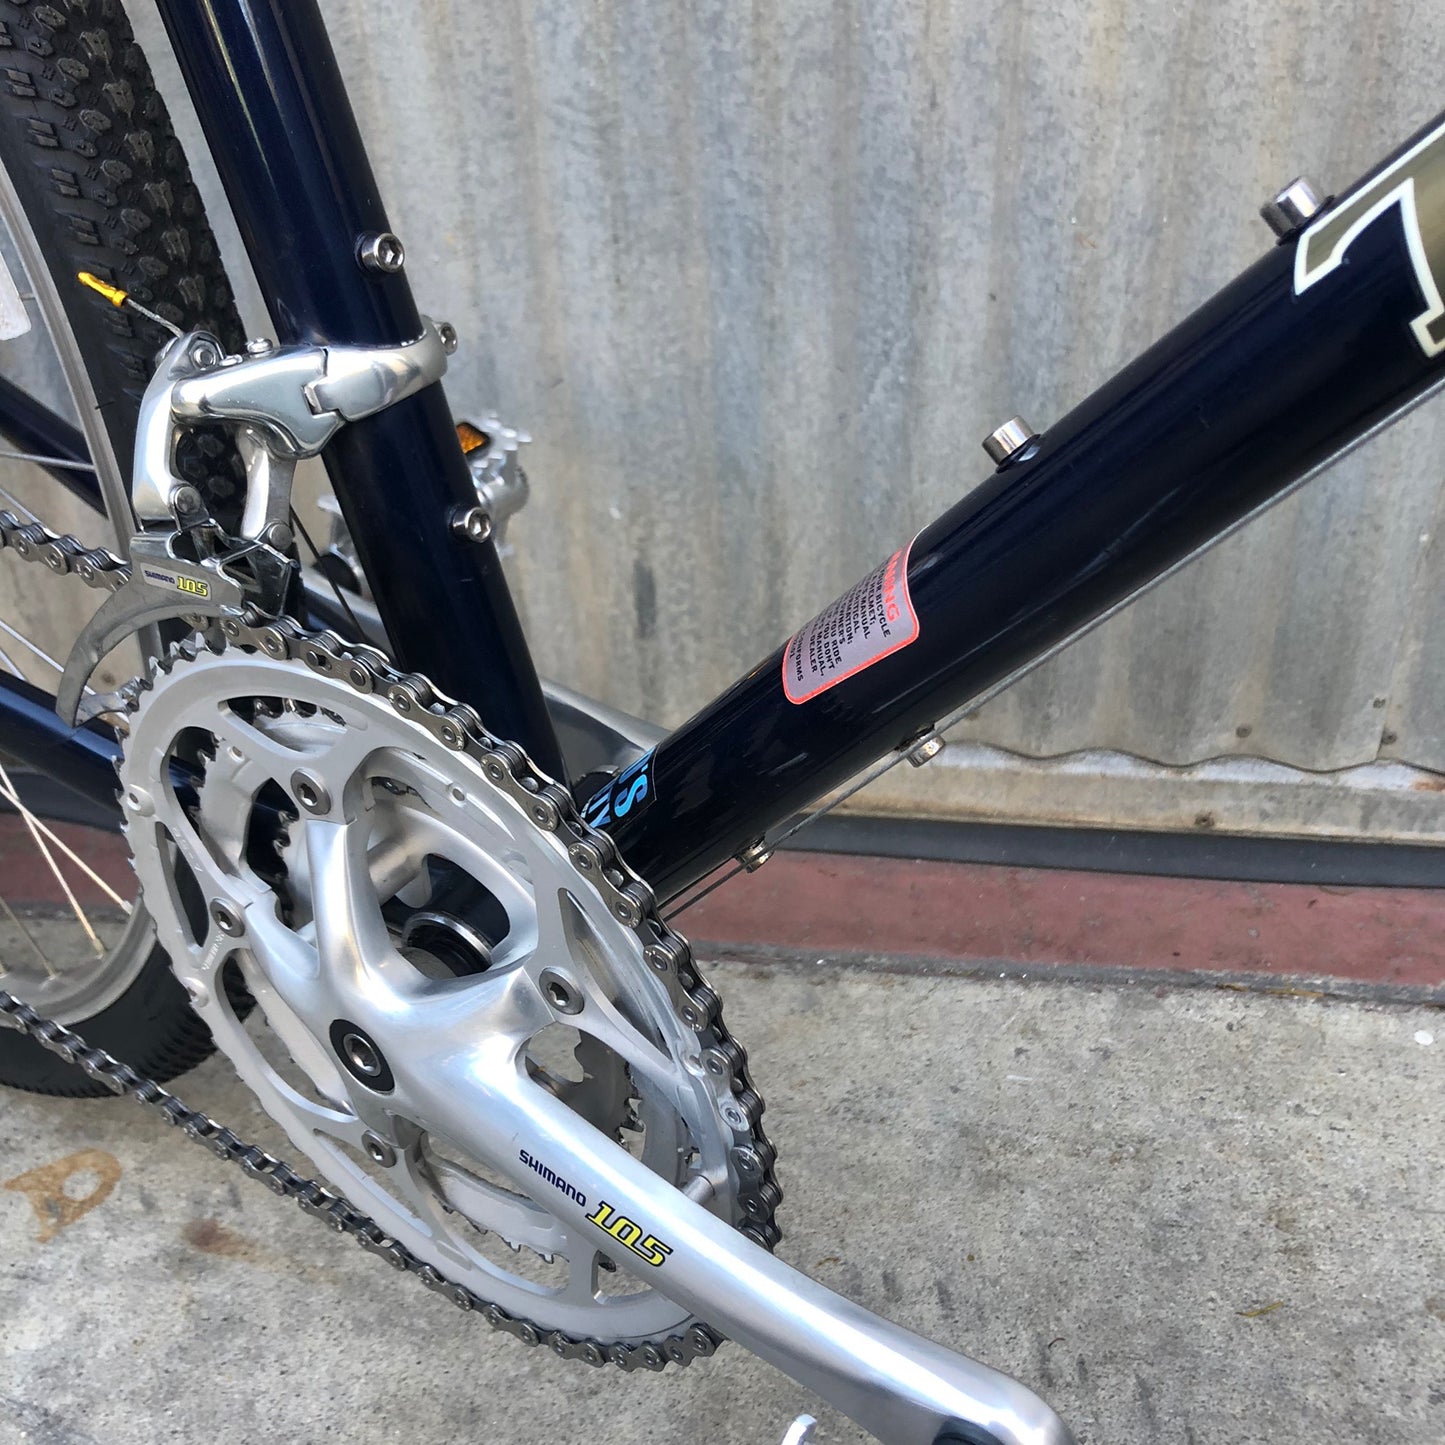 Trek 520 Touring Bicycle - Made in USA?